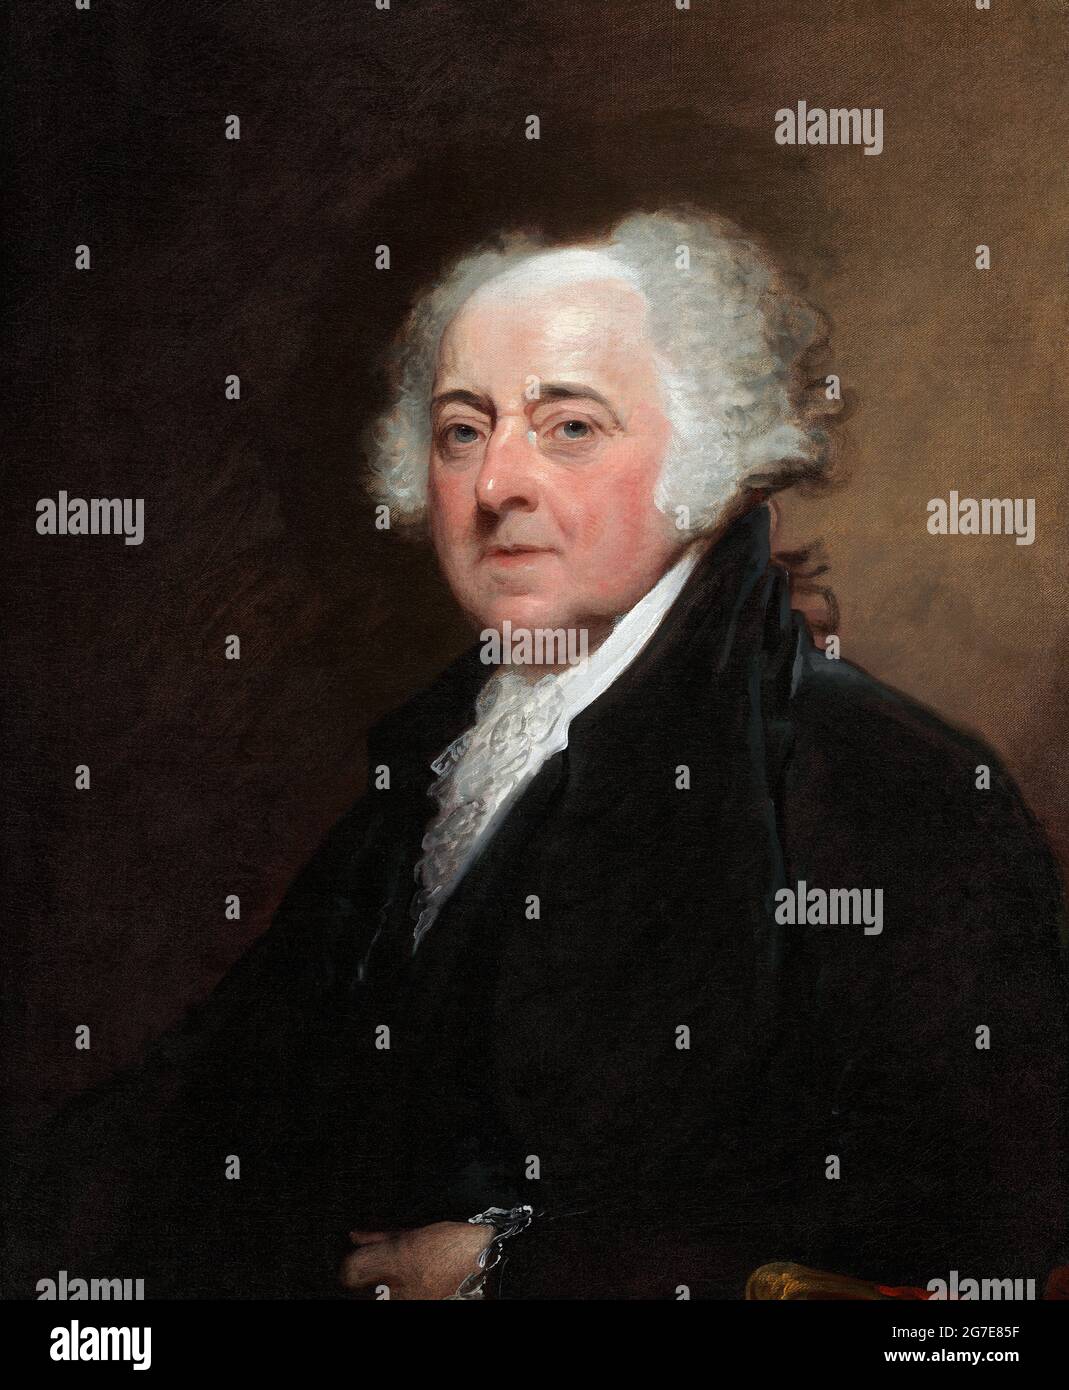 John Adams. Porträt des 2. US-Präsidenten John Adams (1735-1826) von Gilbert Stuartl, Öl auf Leinwand, 1800/1815 Stockfoto